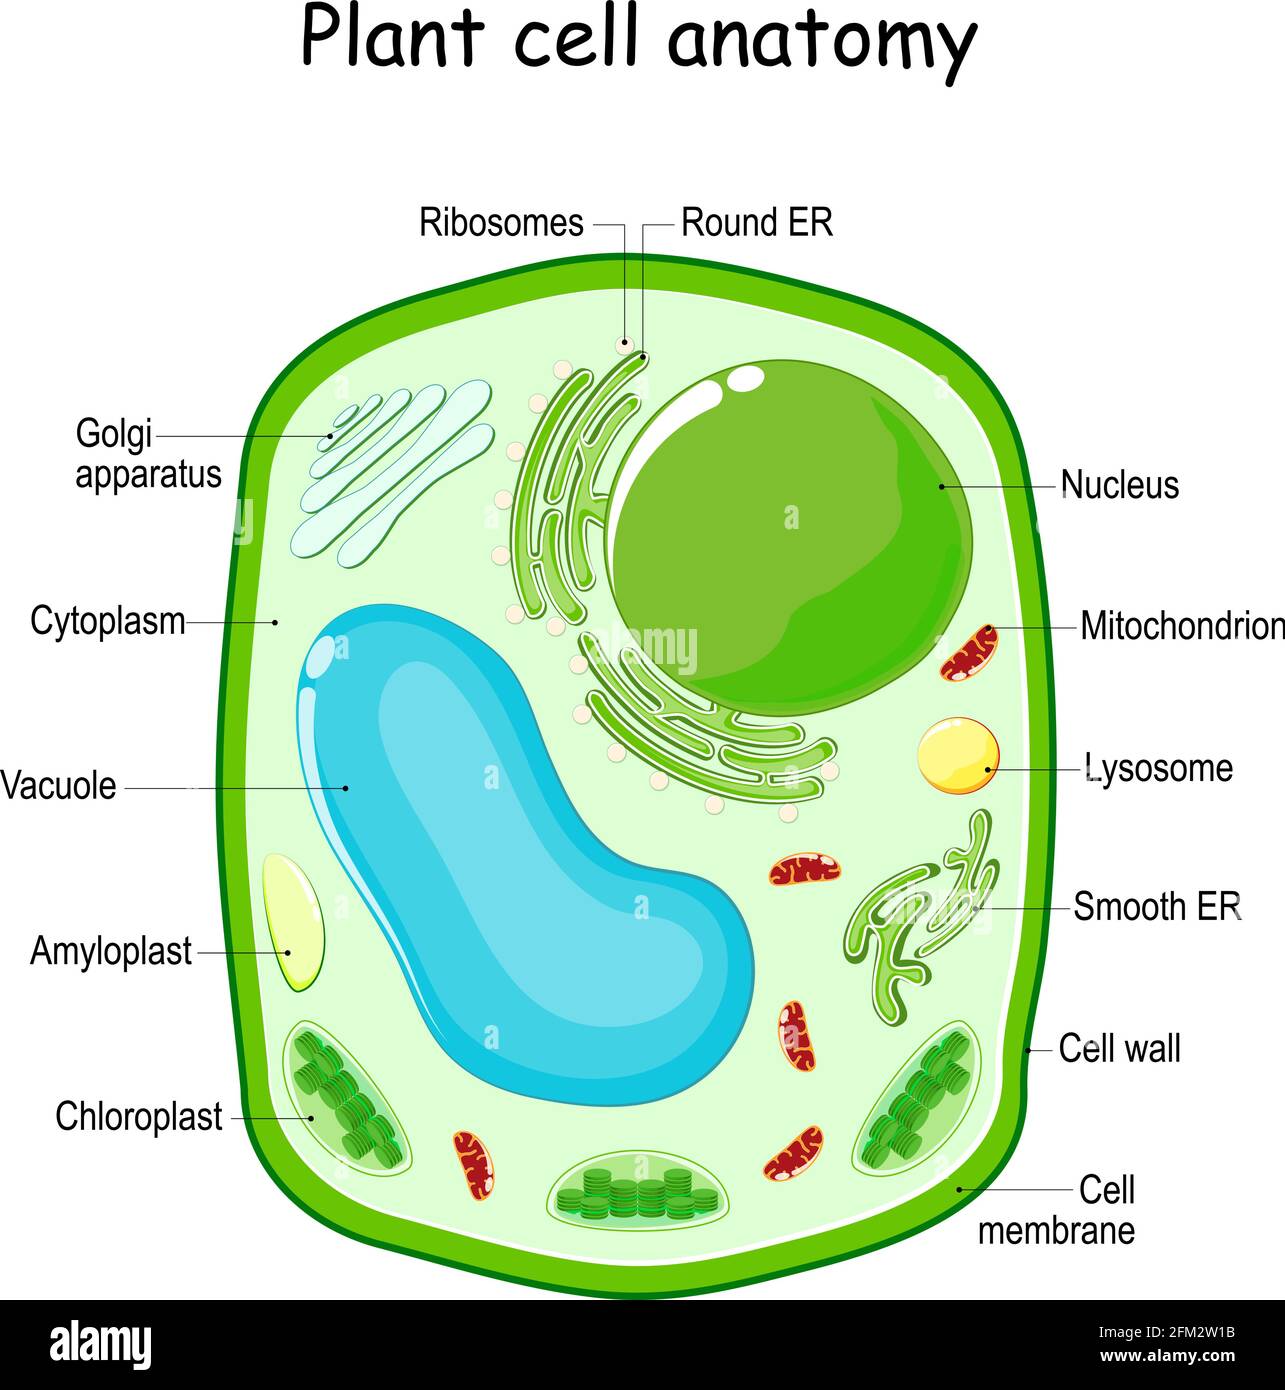 Estructura celular de la planta. Diagrama vectorial. Anatomía de una célula biológica con partes etiquetadas. Sección transversal de una célula vegetal. Ilustración para la educación Ilustración del Vector